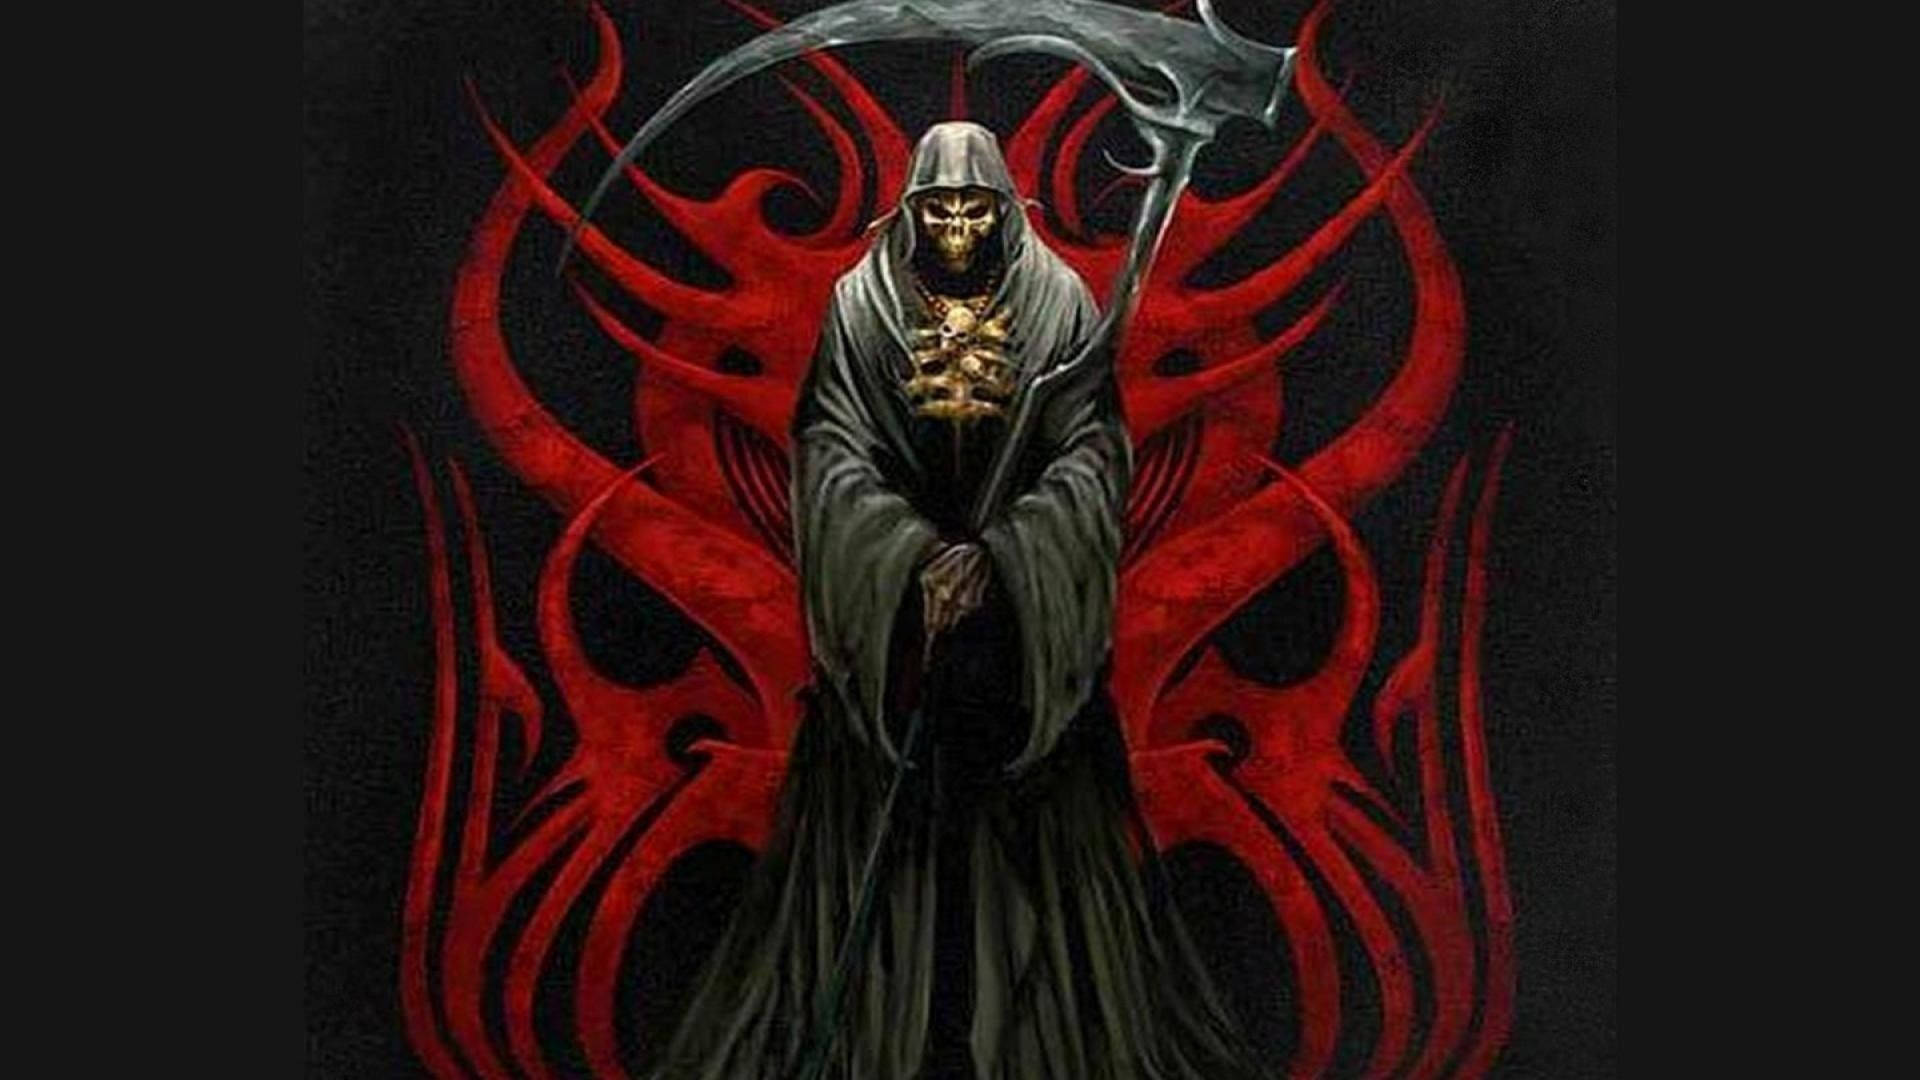 Free Grim Reaper Wallpaper Downloads, [100+] Grim Reaper Wallpapers for  FREE 